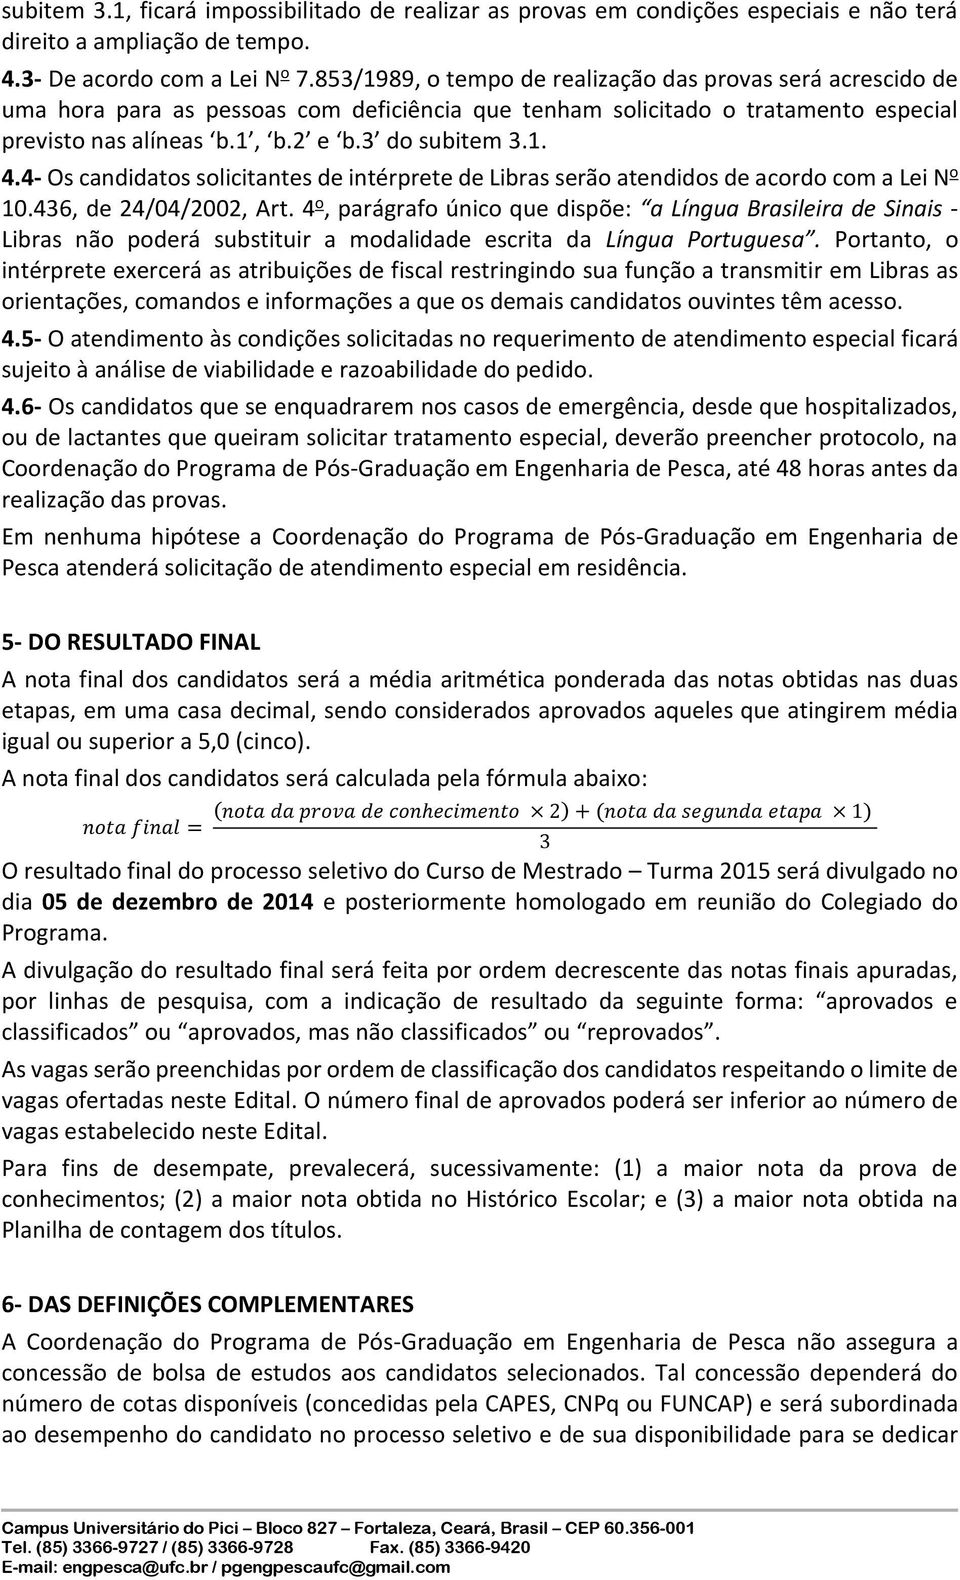 4- O candidato olicitante de intérprete de Libra erão atendi de acordo com a Lei N o 10.436, de 24/04/2002, Art.